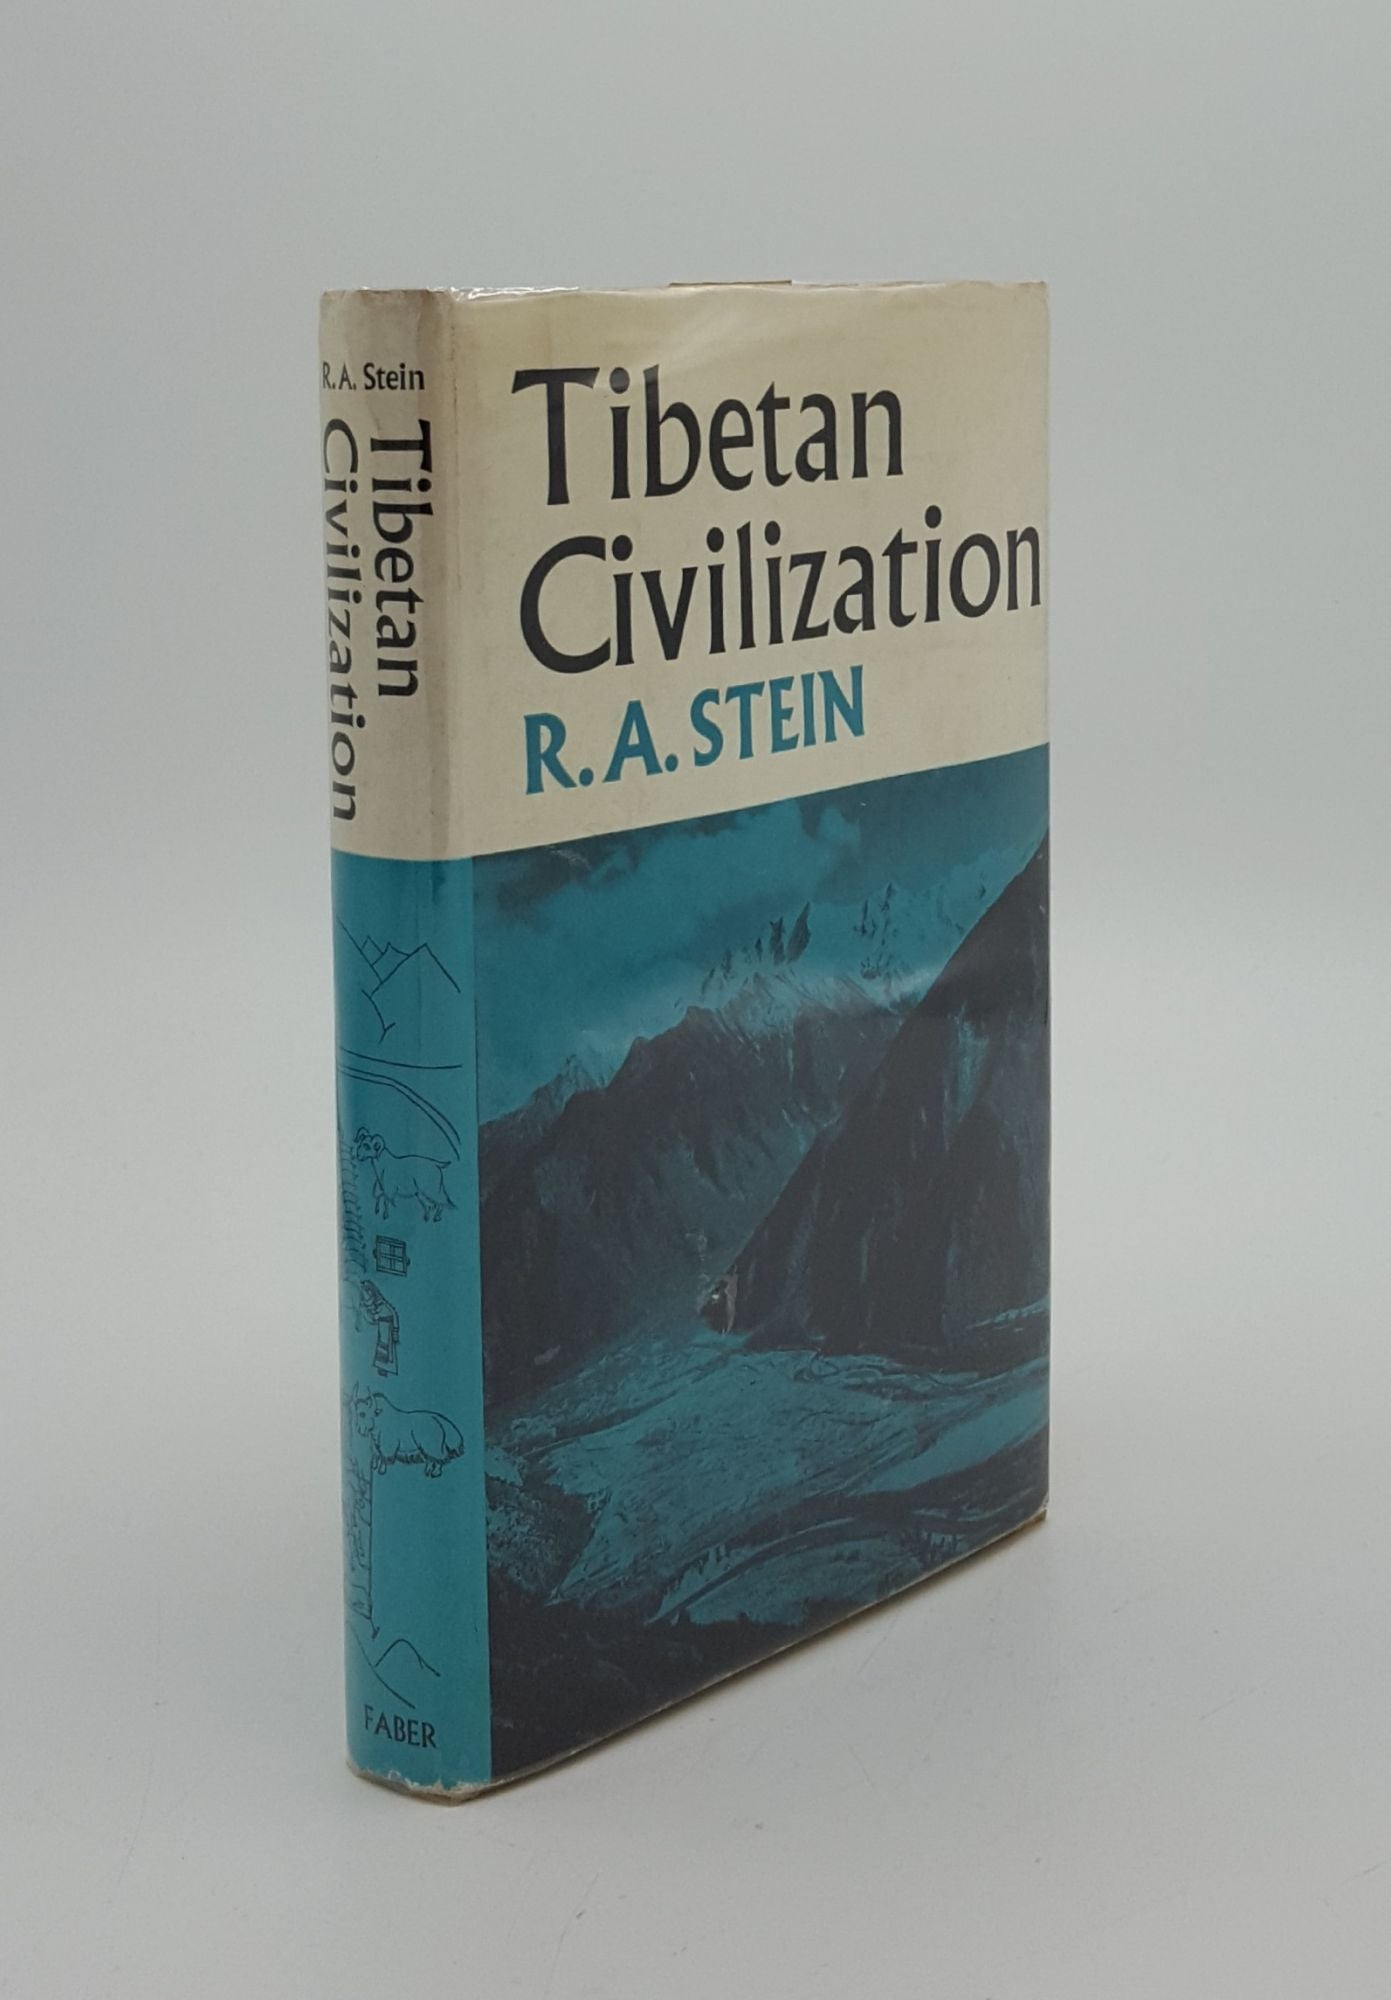 STEIN R. A. - Tibetan Civilization